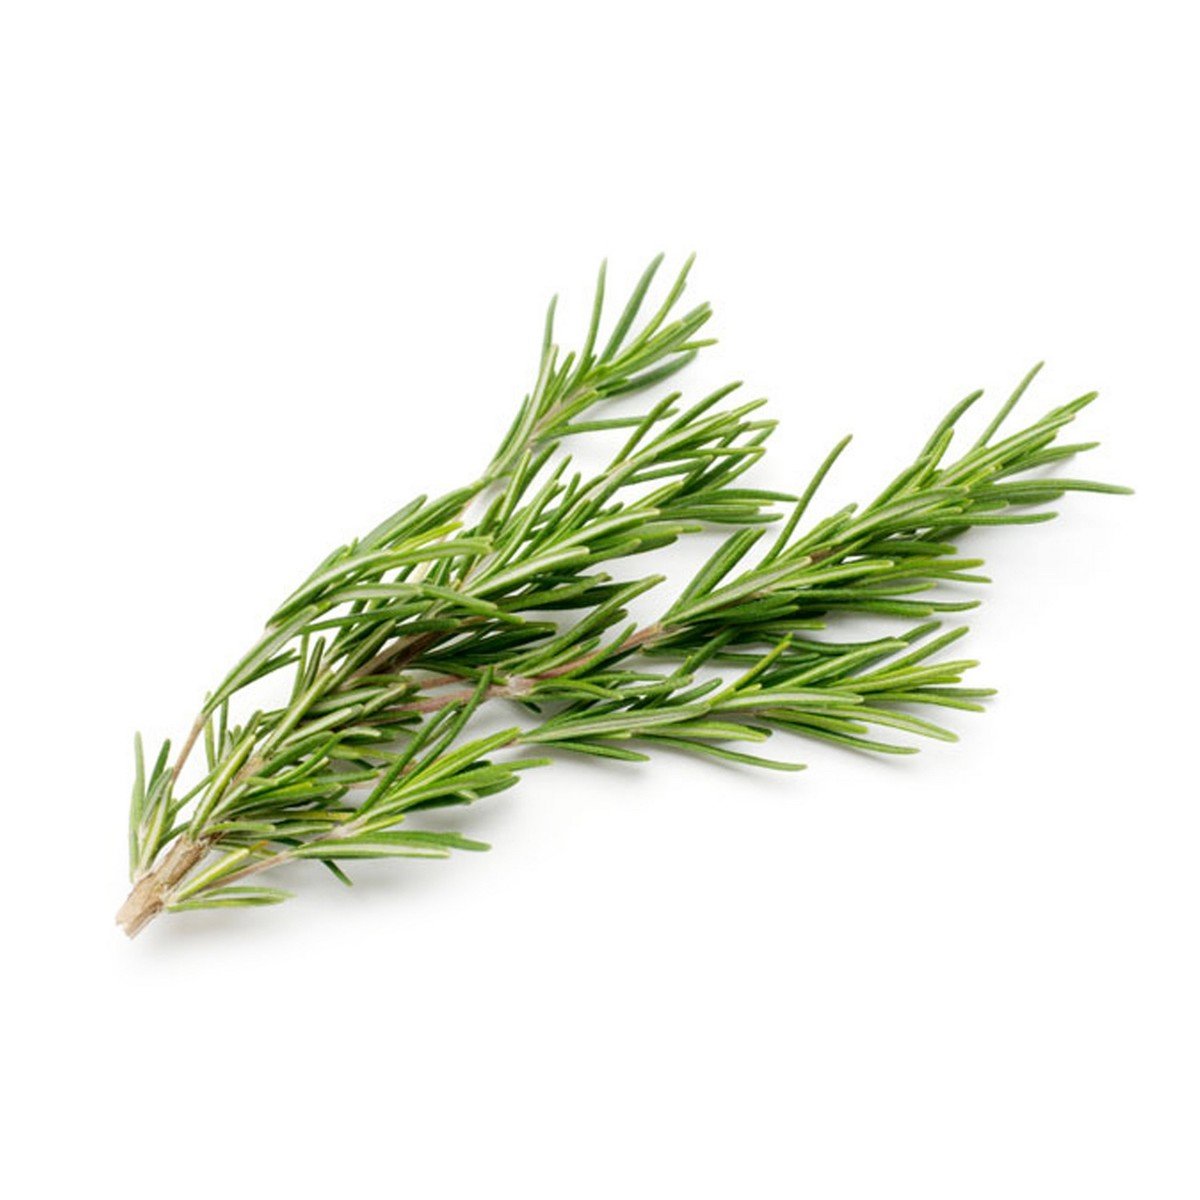 Buy Italian Rosemary 1 Pack Online at Best Price from LuLu Hypermarket Importd.Herbs/Leaves in Saudi Arabia | Lulu Market Saudi Arabia | Kanbkam supermarket